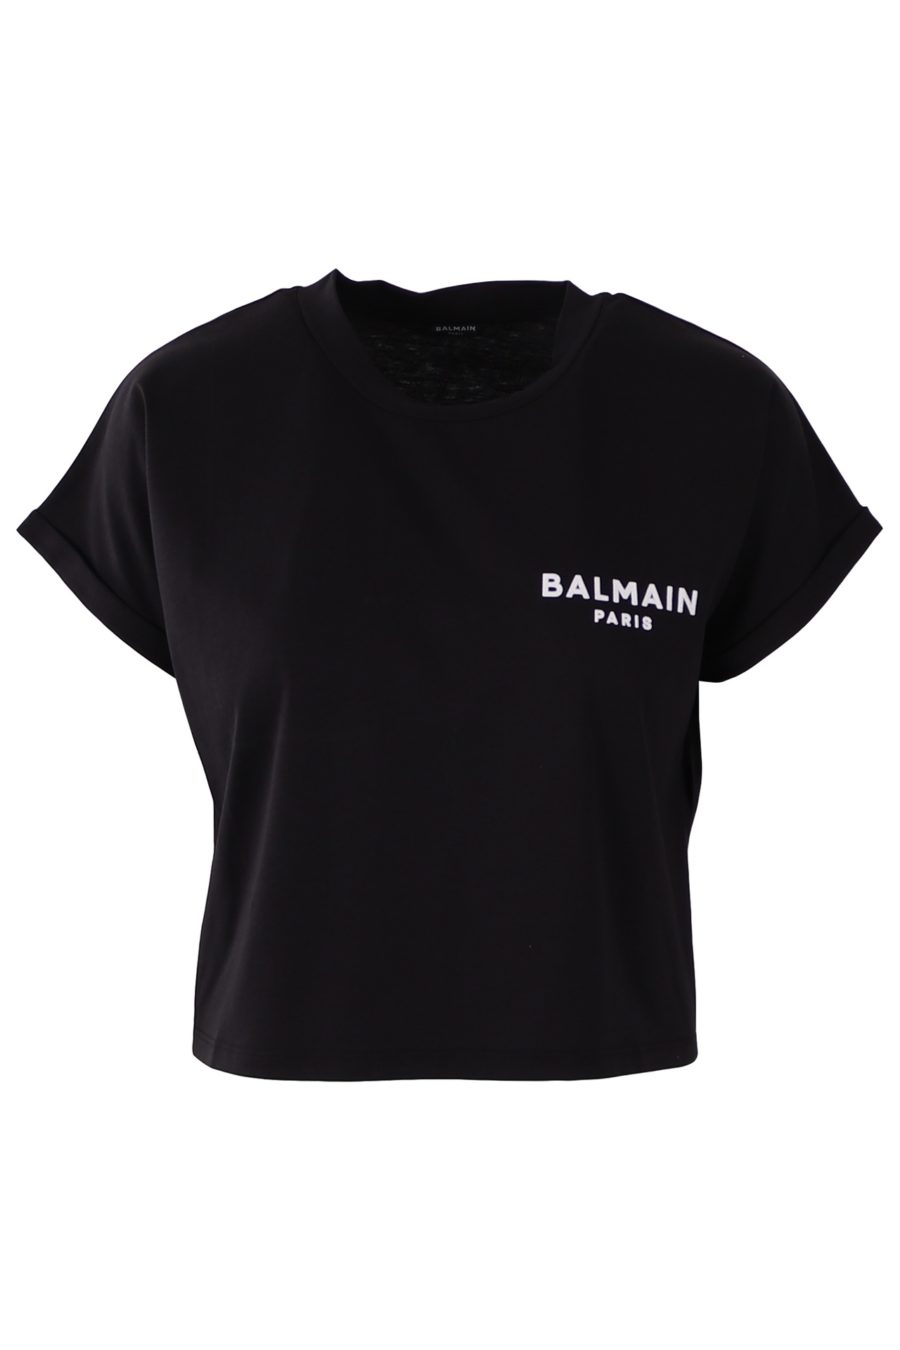 Camiseta corta Balmain negra con logotipo pequeño - 2fed960d4683afff8c064cd8a38aa43f53d6046f